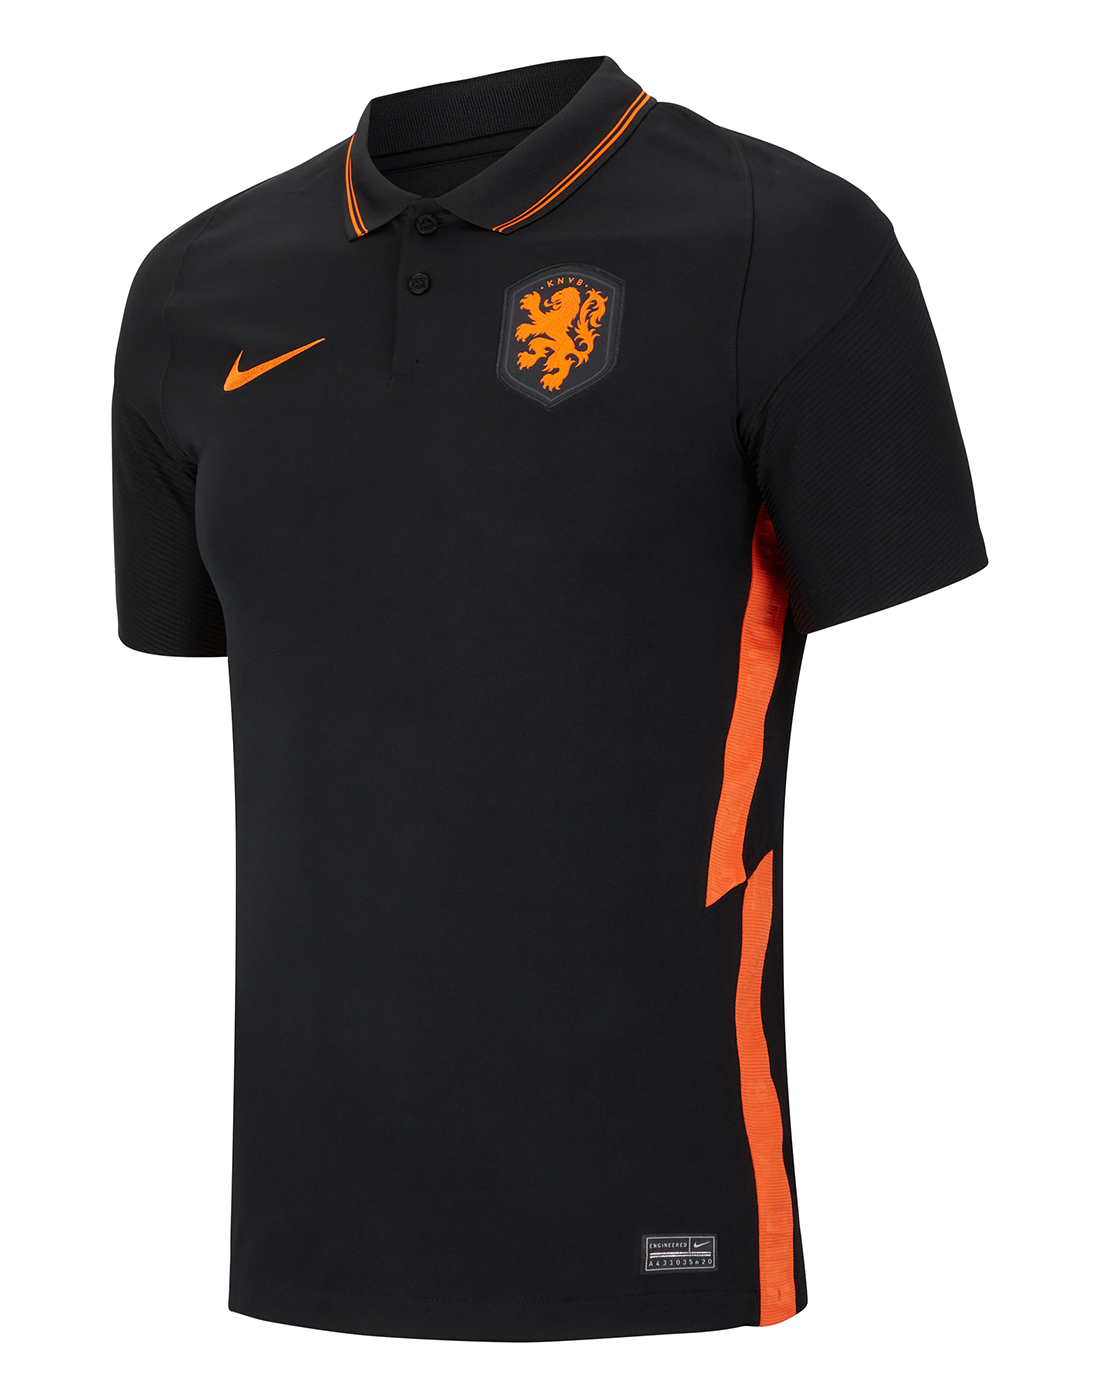 Netherlands Football Jersey 2020 - Netherlands away Euro 2020 soccer ...